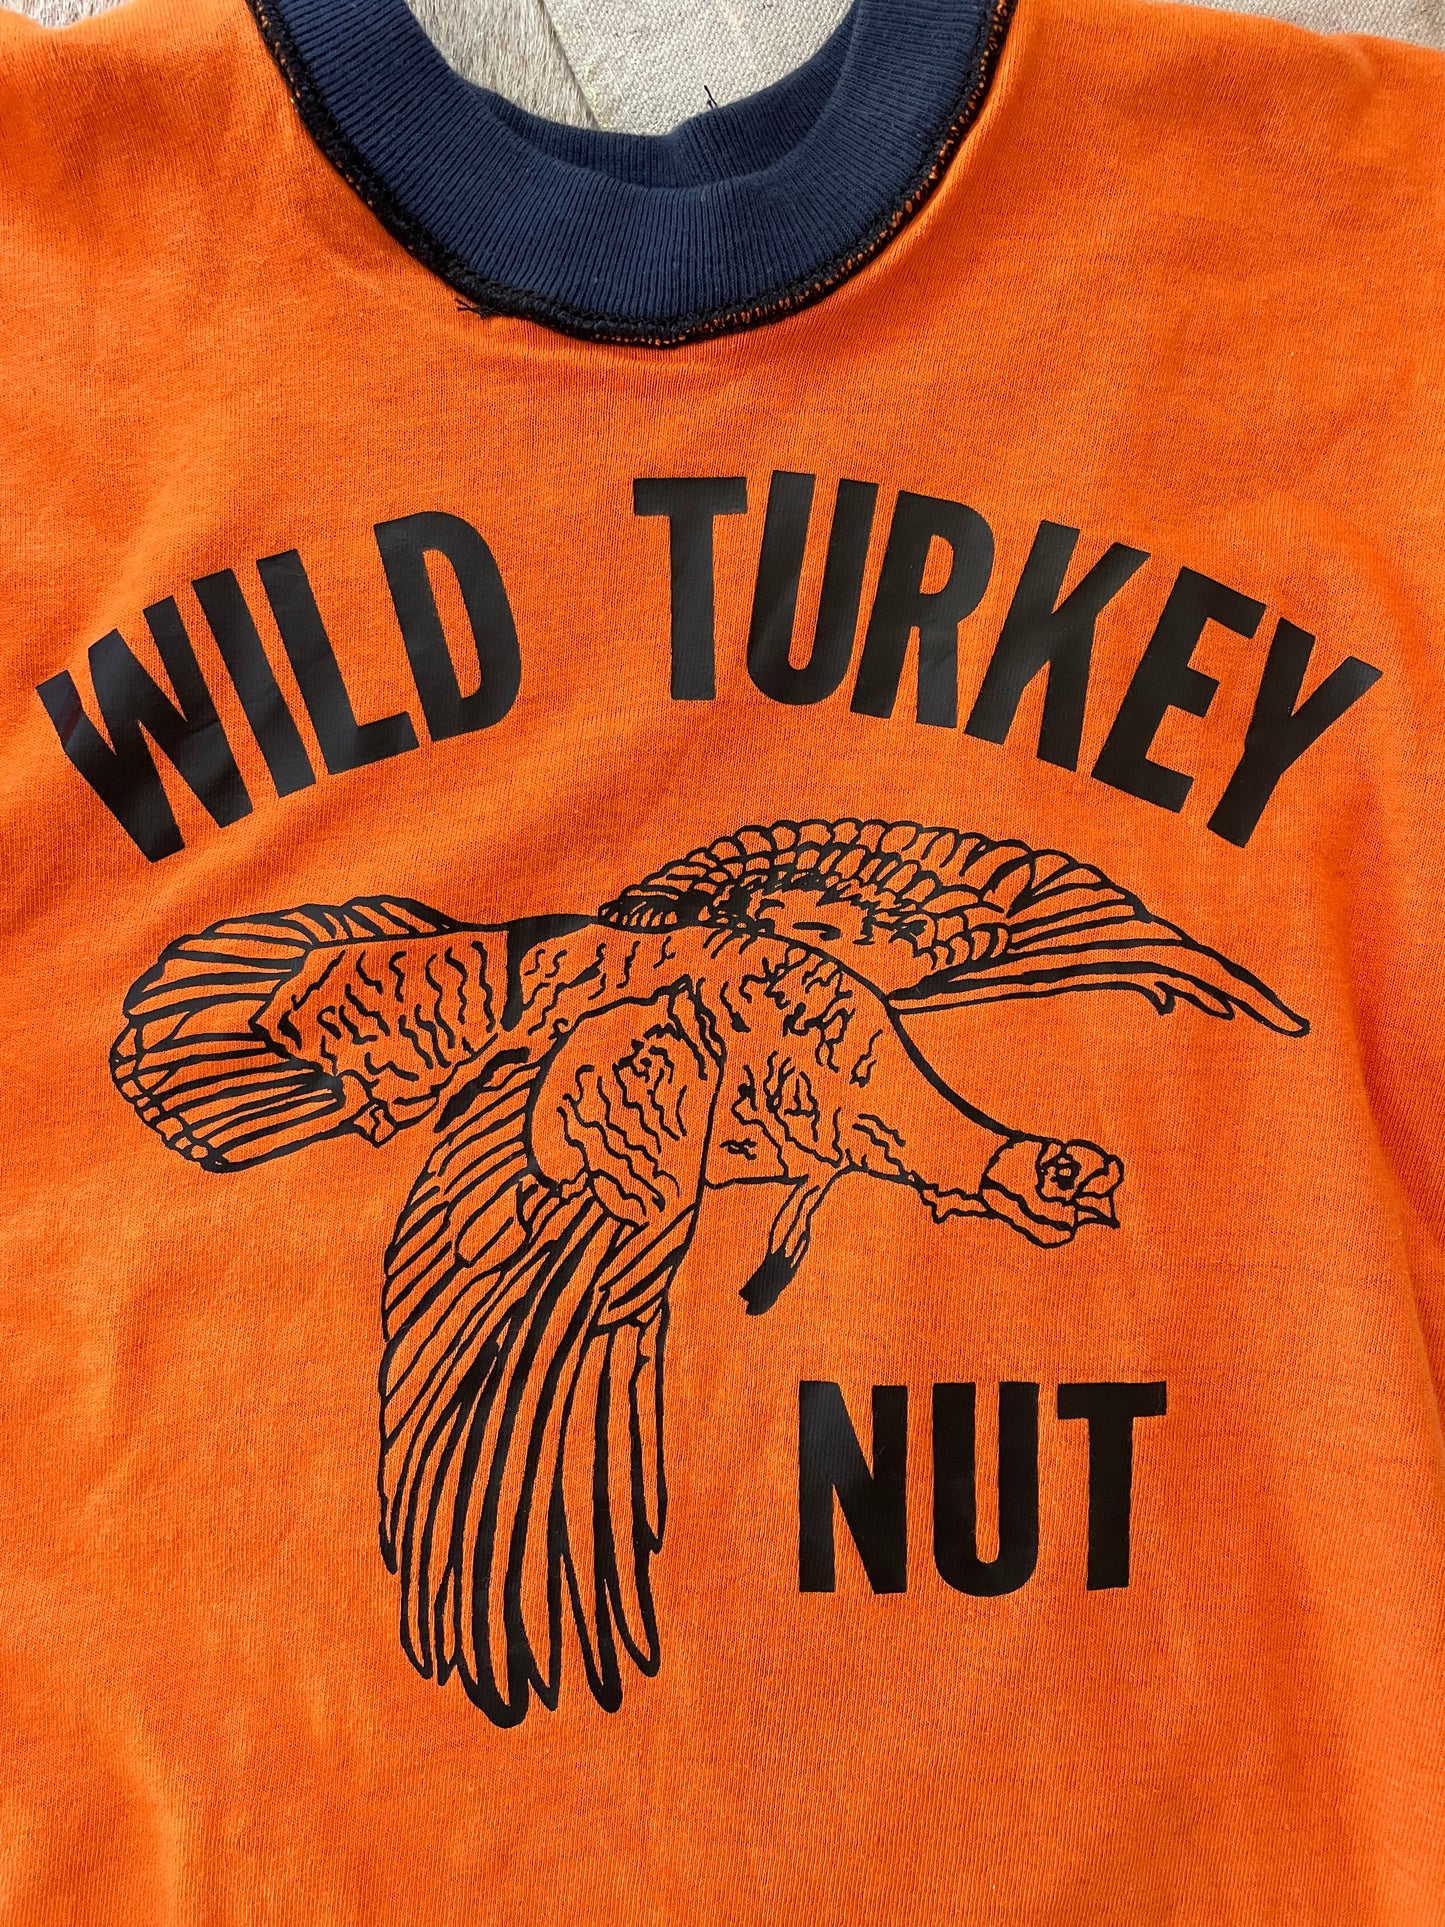 70s Deadstock Wild Turkey Nut Tee